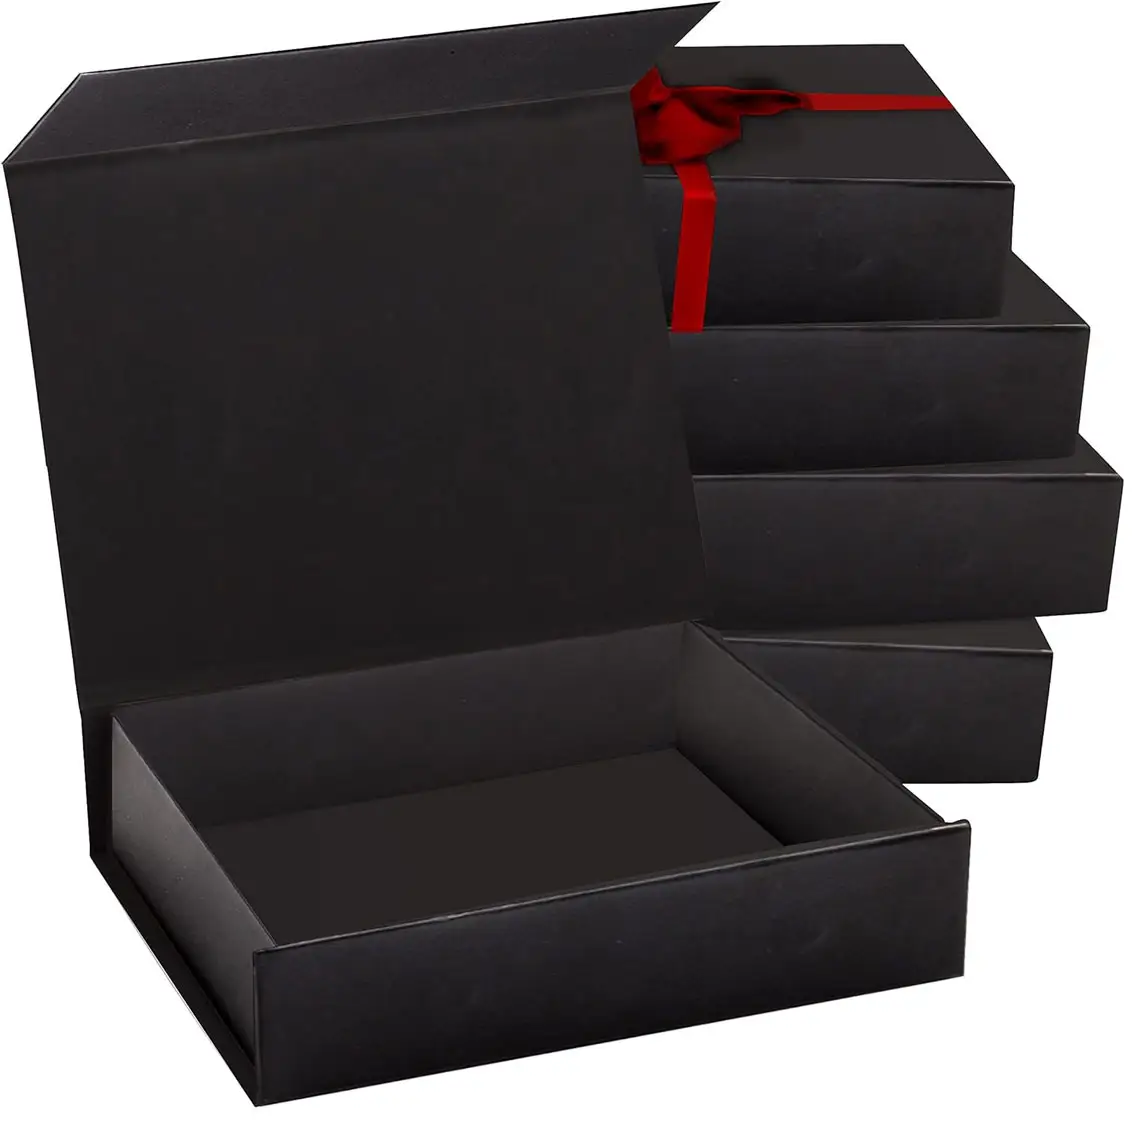 Caixa de presente dura preta com tampa magnética 7 "x 5" x 1,6 "do fechamento caixas do retângulo para presentes com revestimento lustroso preto